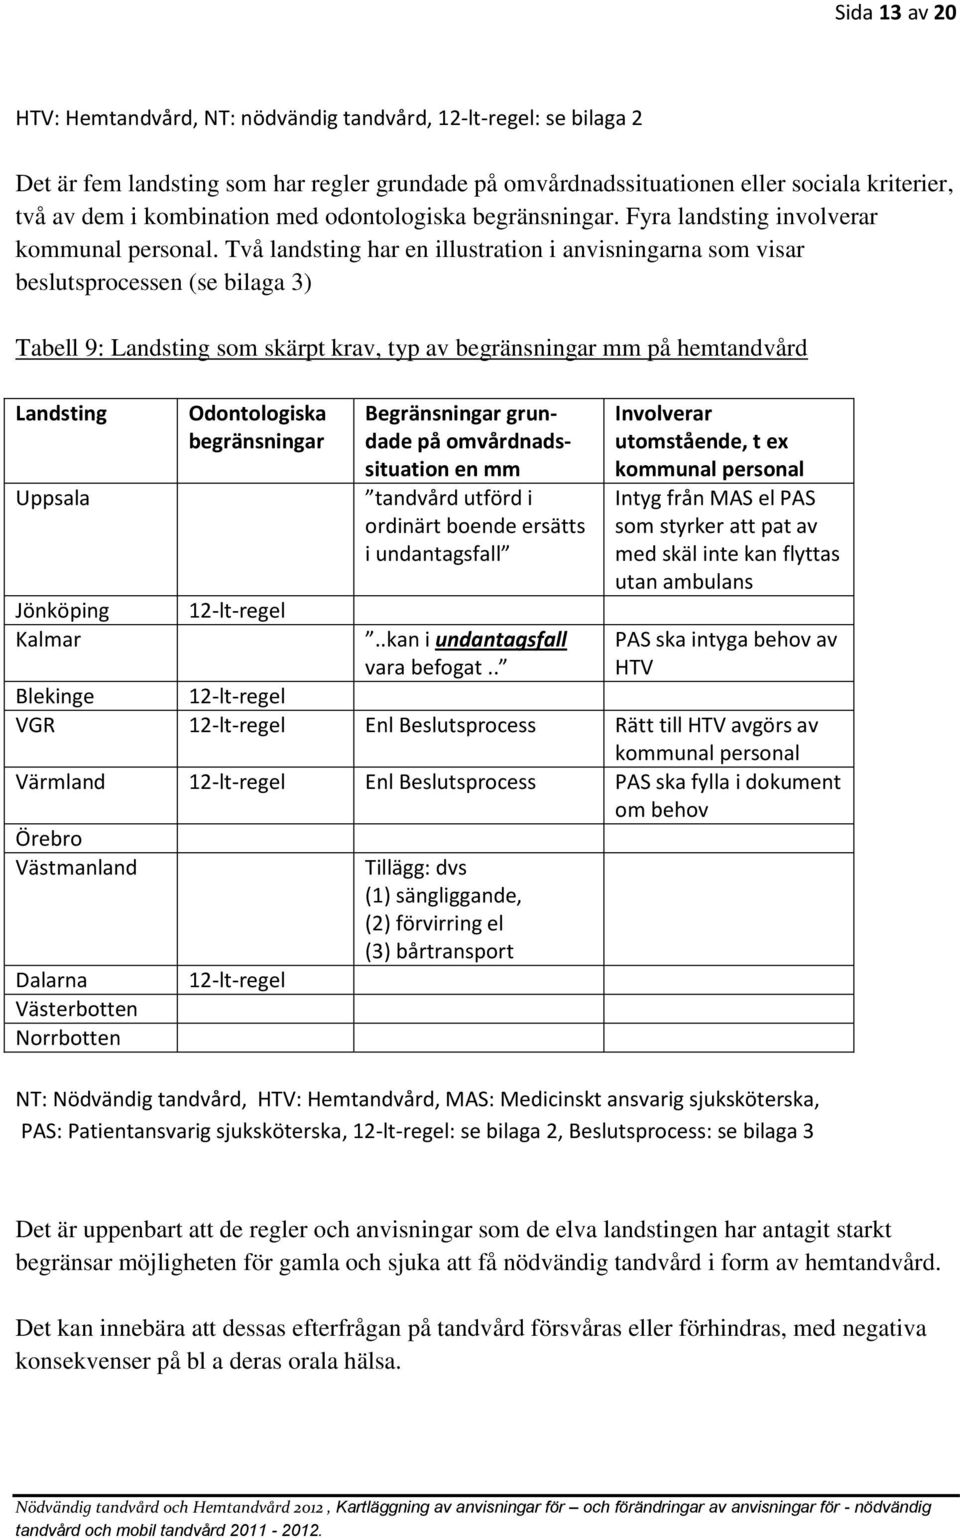 Två landsting har en illustration i anvisningarna som visar beslutsprocessen (se bilaga 3) Tabell 9: Landsting som skärpt krav, typ av begränsningar mm på hemtandvård Landsting Uppsala Jönköping